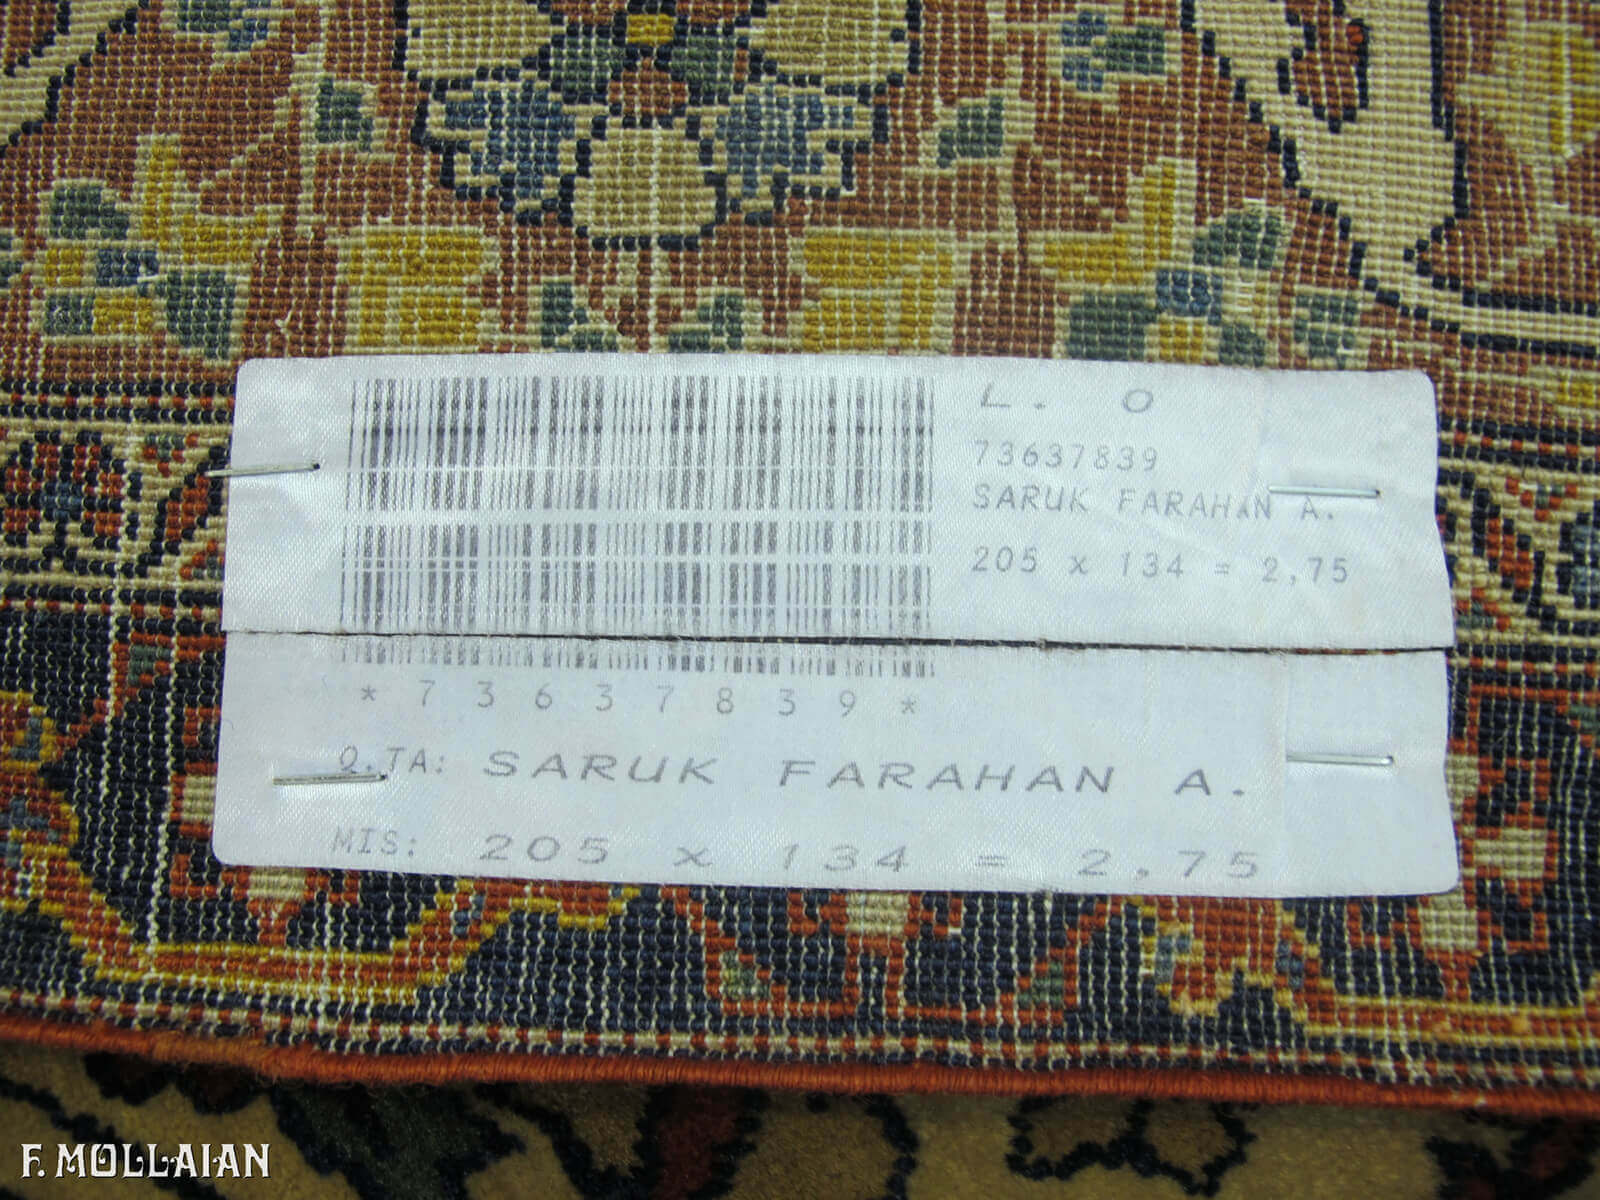 Antique Persian Saruk Farahan Rug n°:73637839